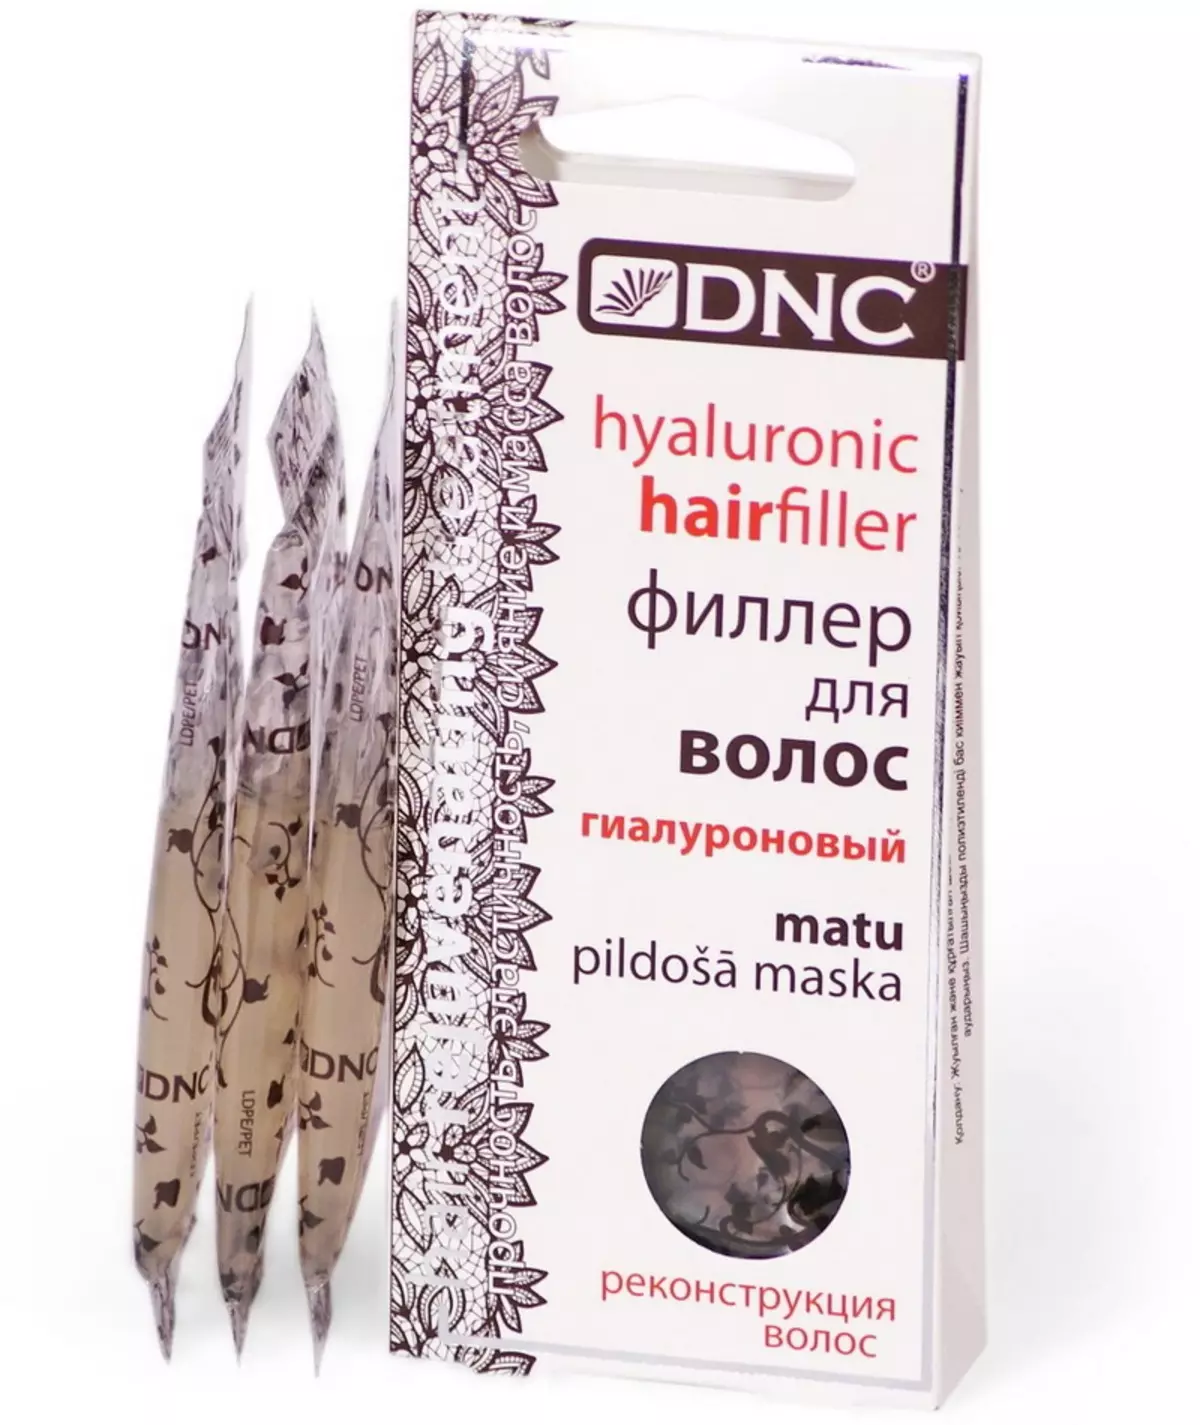 Kozmetikë DNC: Kozmetikë për flokë, vaj kokosit dhe kompani të tjera kozmetike. Shqyrtime të kozmetologëve dhe blerësve 4488_29